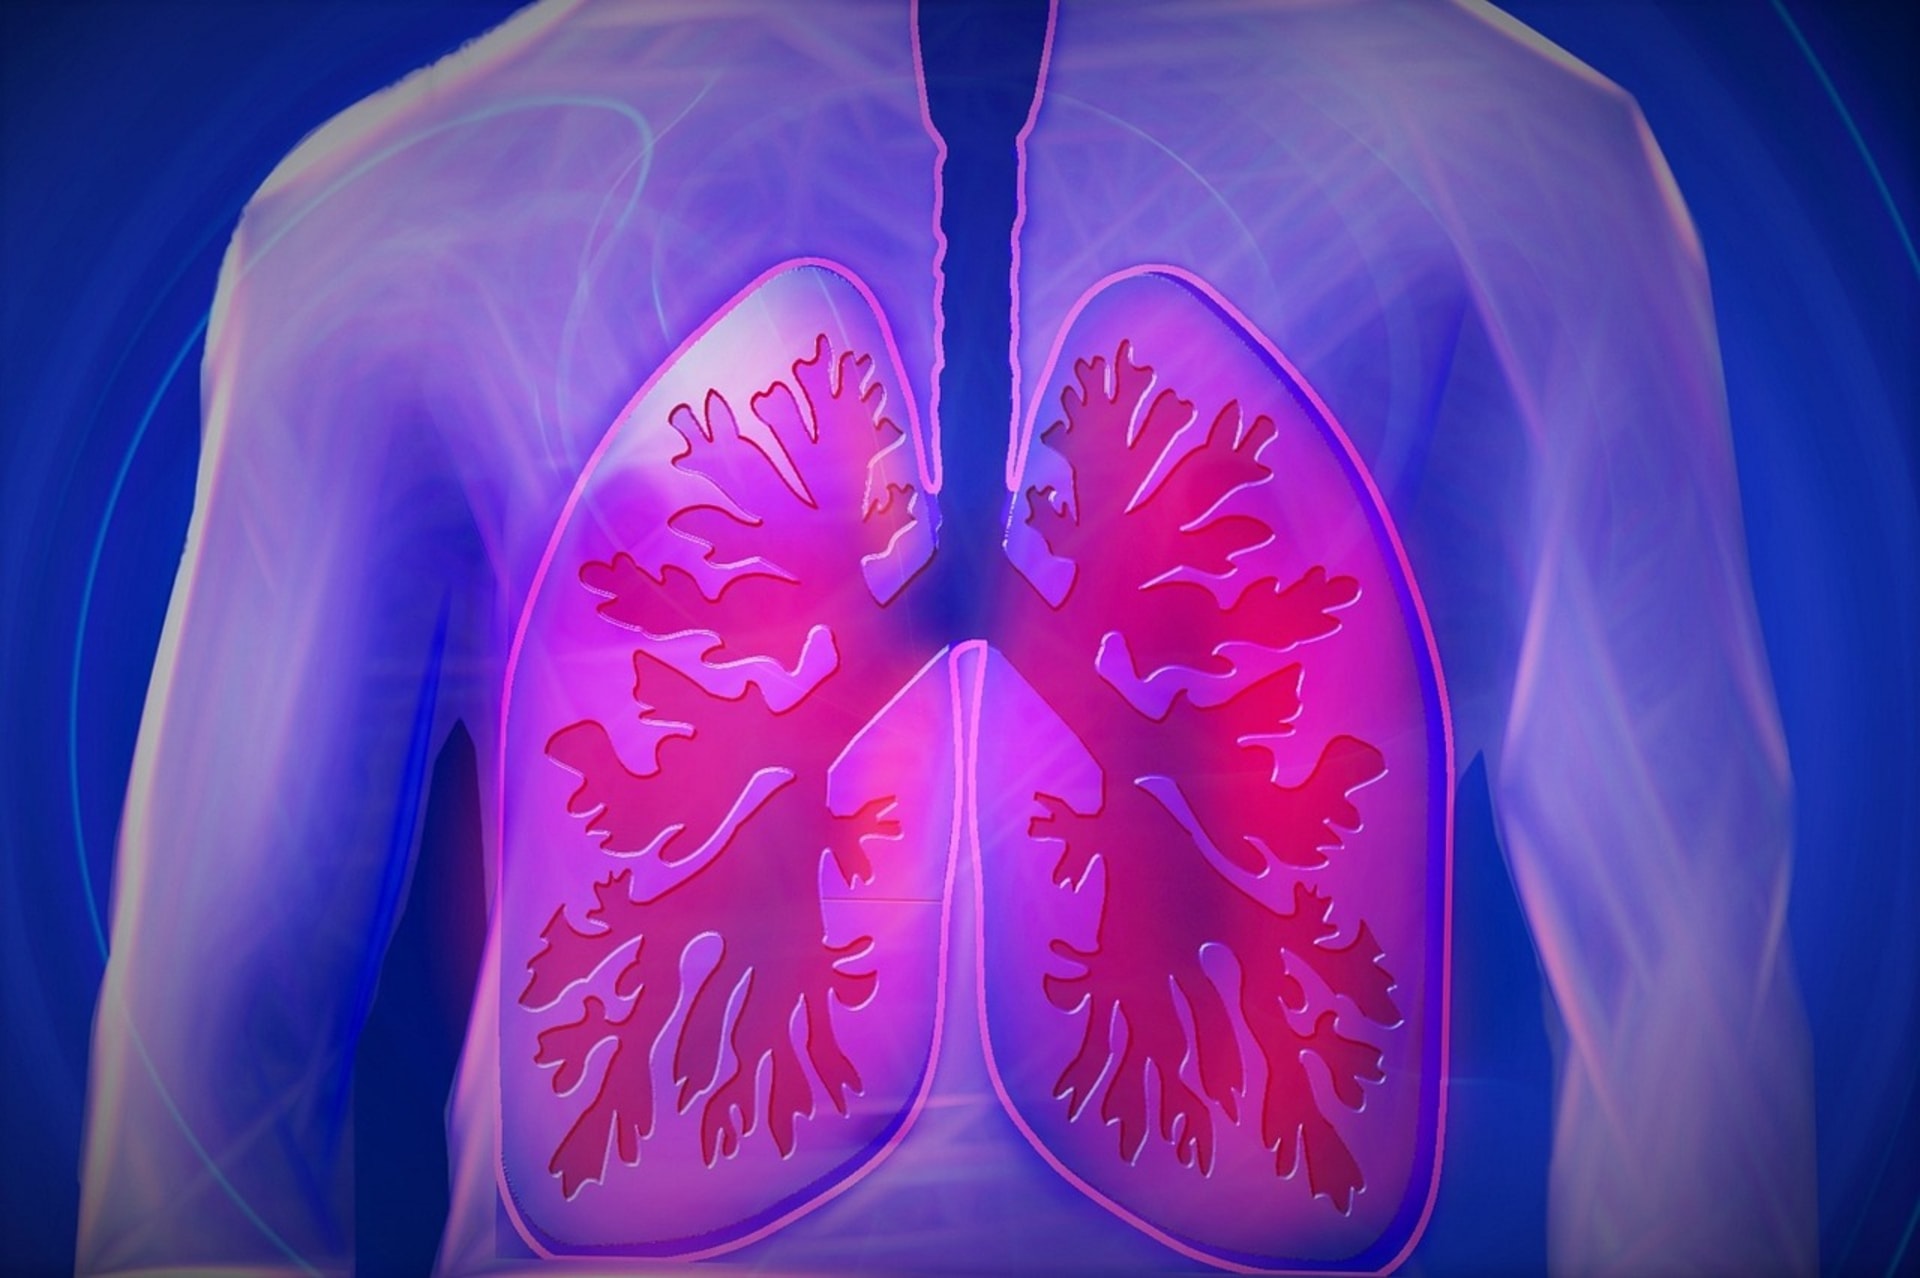 Nemoci plic jsou druhou nejčastější příčinou úmrtí, Češi příznaky ale ignorují